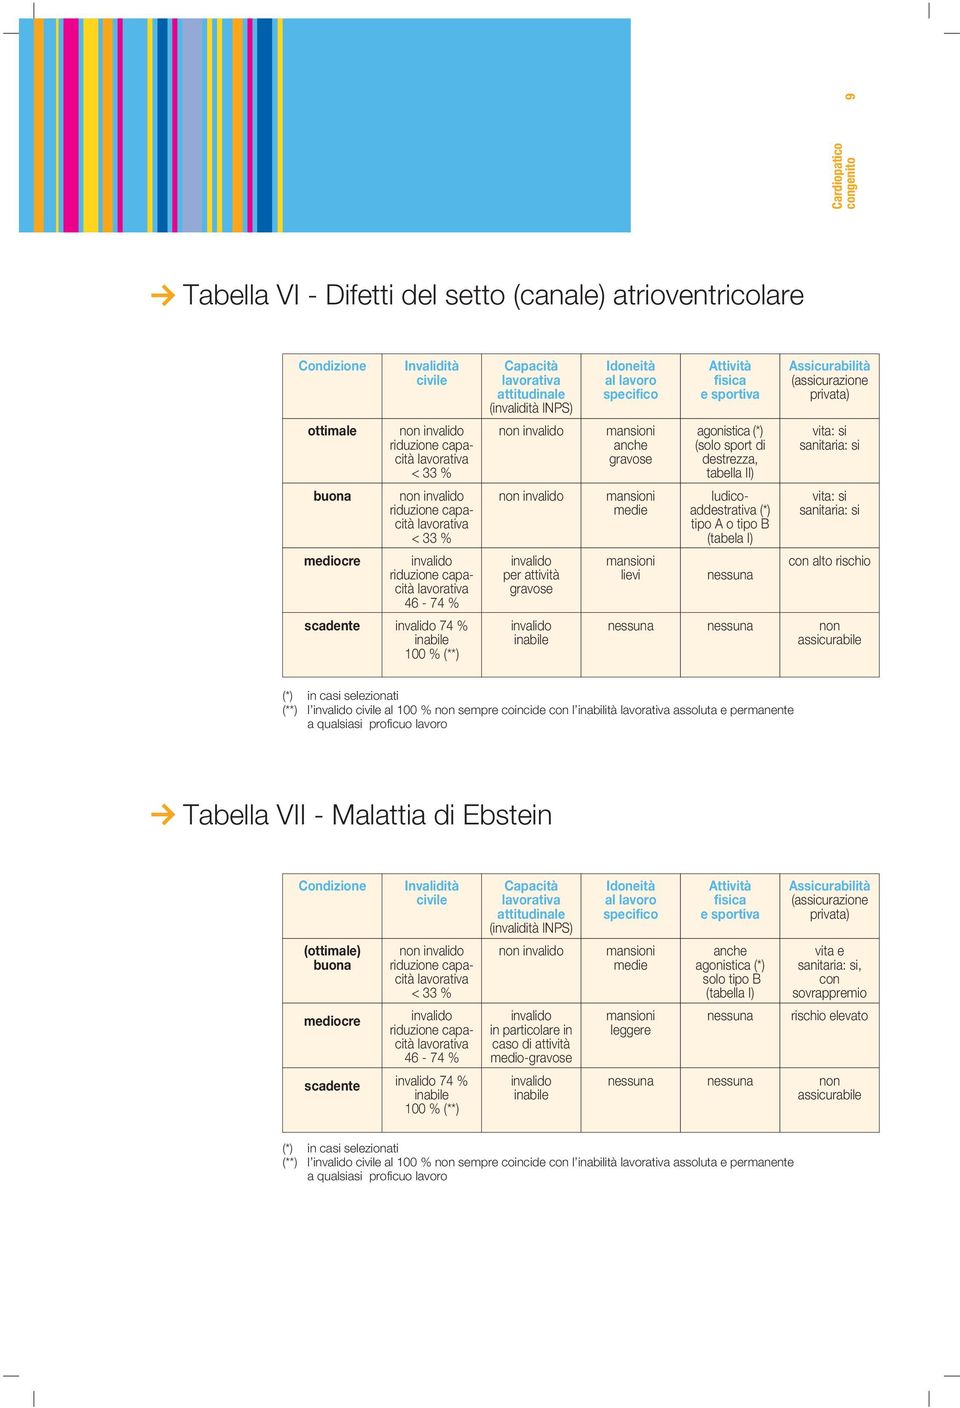 inabilità assoluta e permanente Tabella VII - Malattia di Ebstein (ottimale) 46-74 % 74 % in particolare in caso di attività